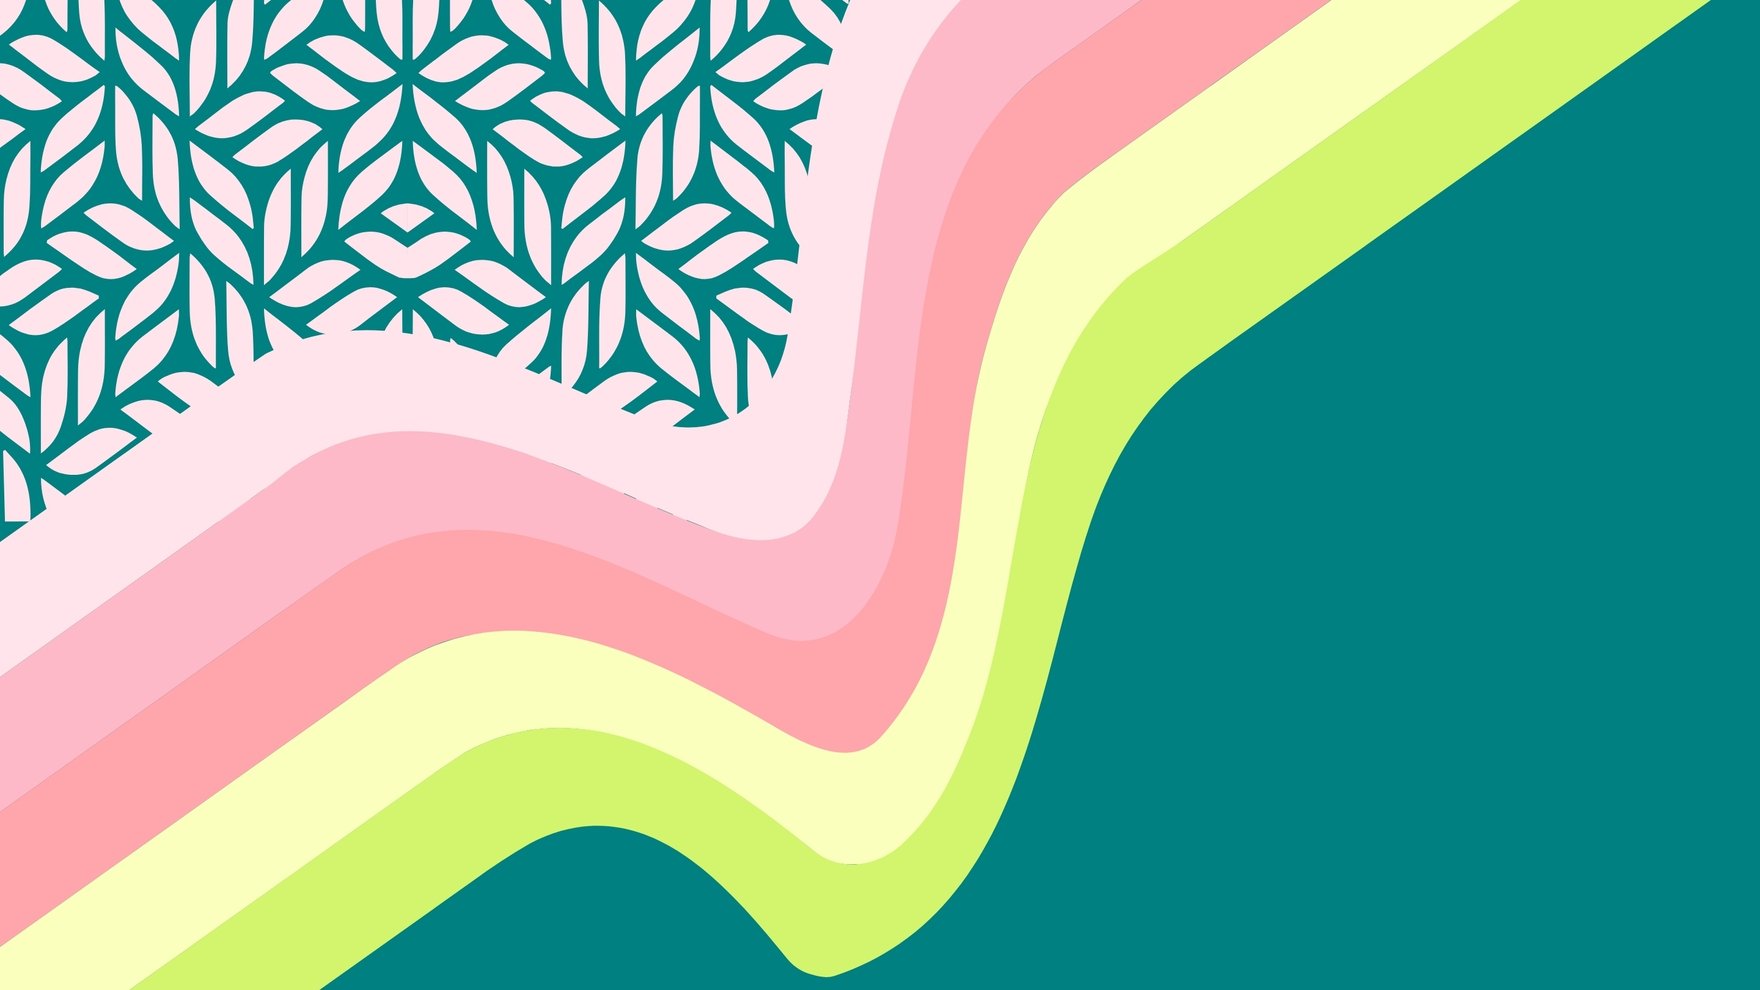 Light Pink And Teal Background in Illustrator, EPS, SVG, JPG, PNG